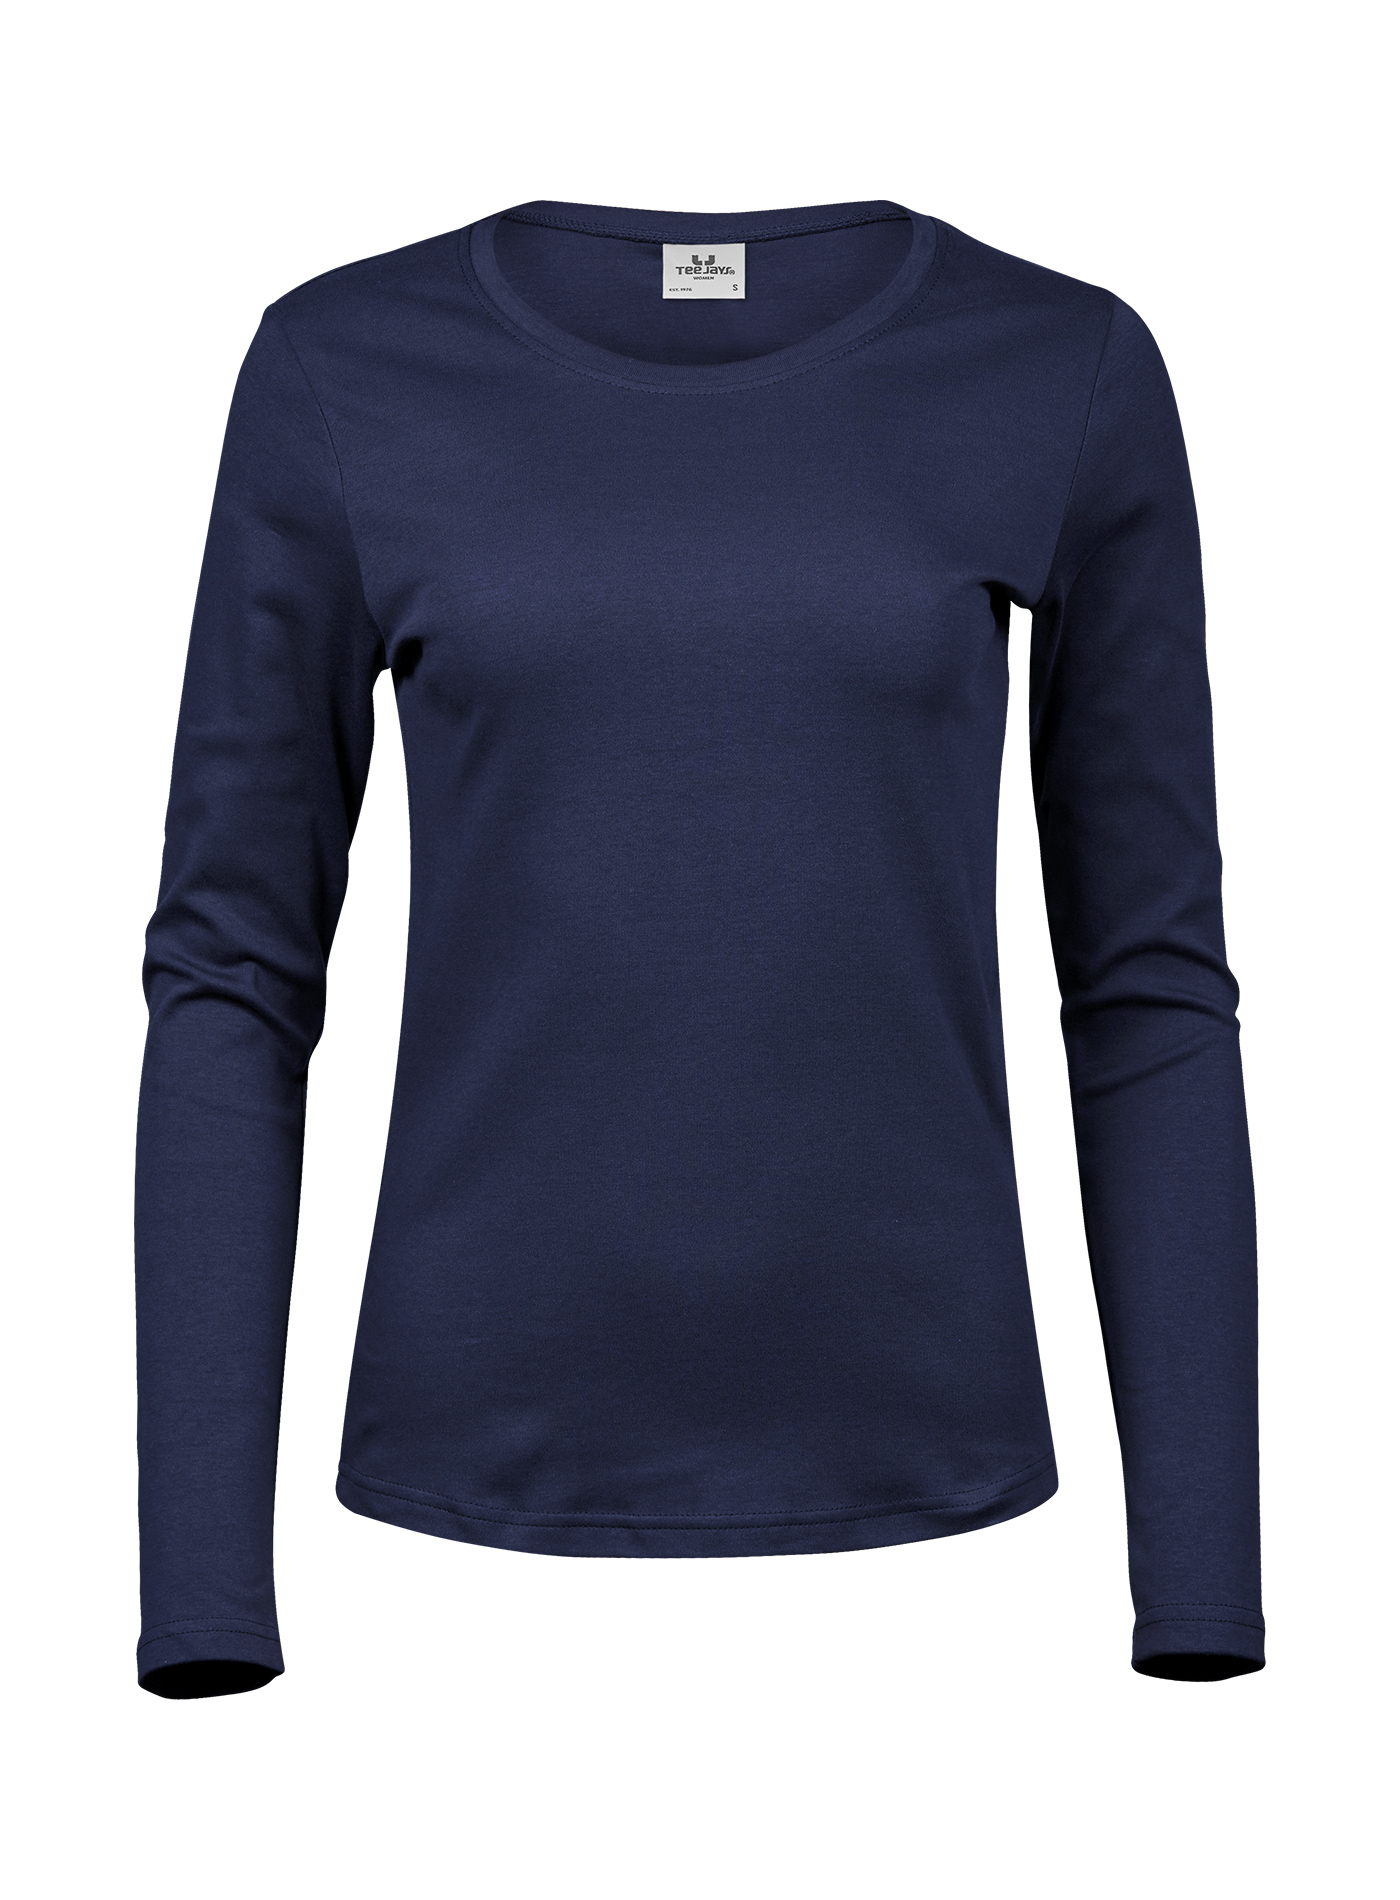 Dámské tričko s dlouhými rukávy Tee Jays Interlock - Námořní modrá L